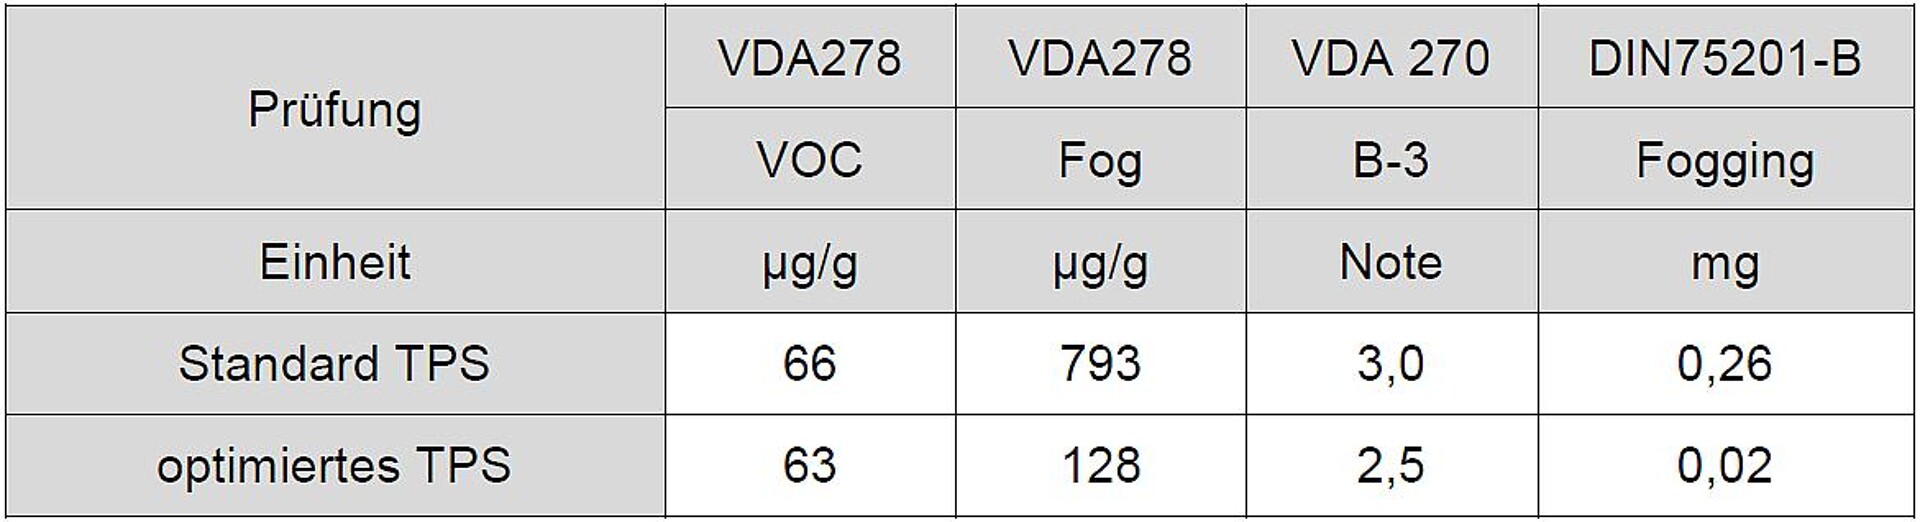 Tabelle 9: Vergleich einer Standard TPS- und einer optimierten TPS-Type von Kraiburg TPE. (Quelle: Kraiburg TPE)